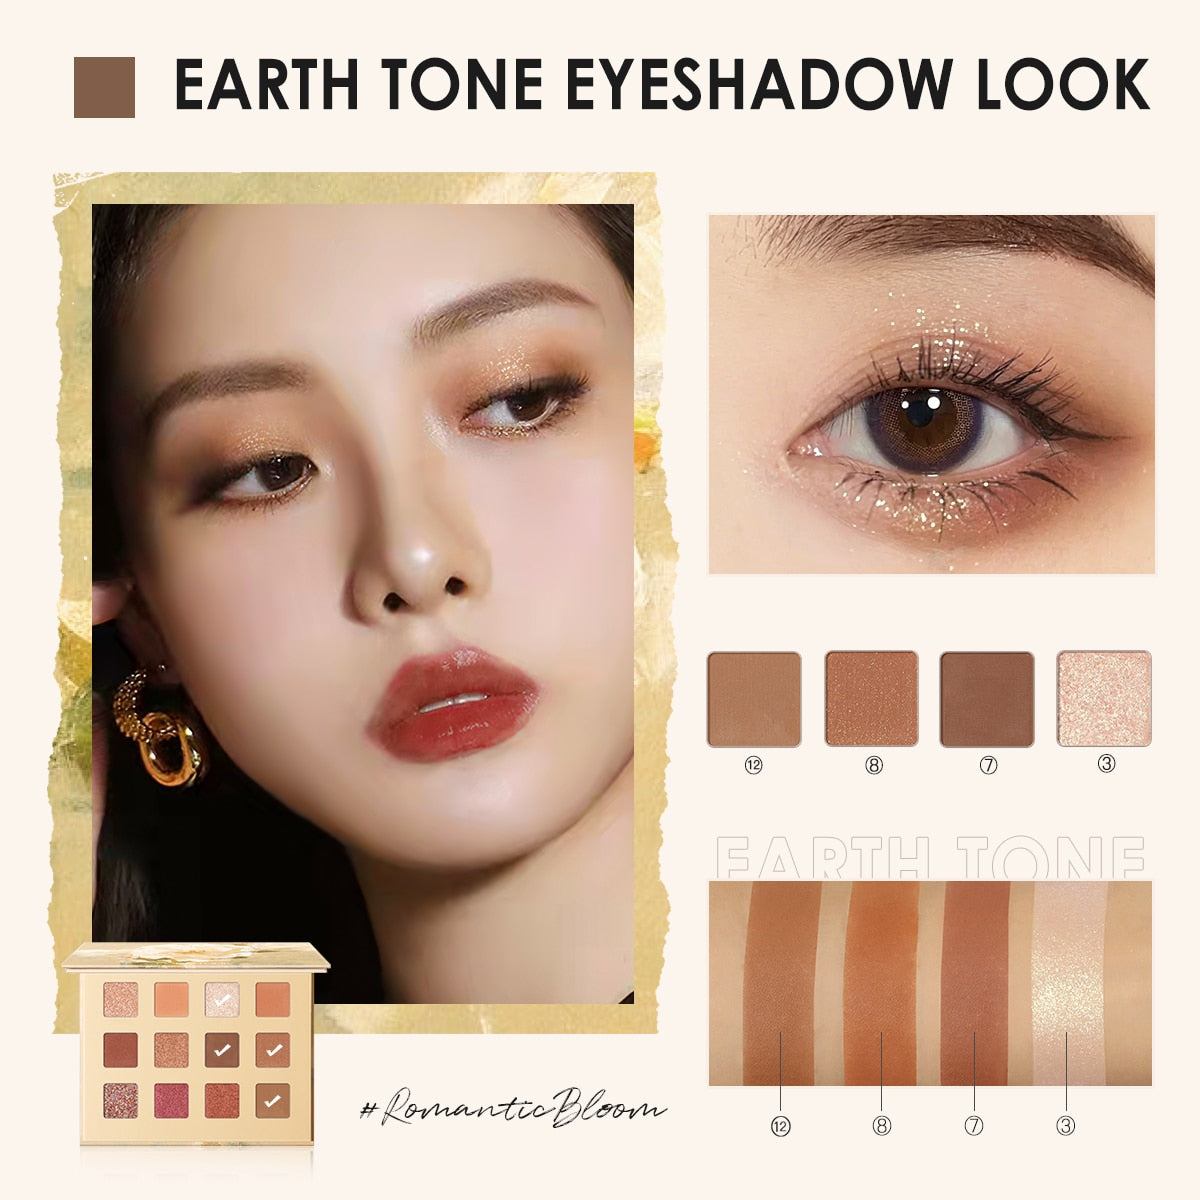 FOCALLURE 12 Shades Eyeshadow Palette #RomanticBloom Jasmine Fine and Smooth Powder Pressed Matte Glitter Eyeshadow Makeup